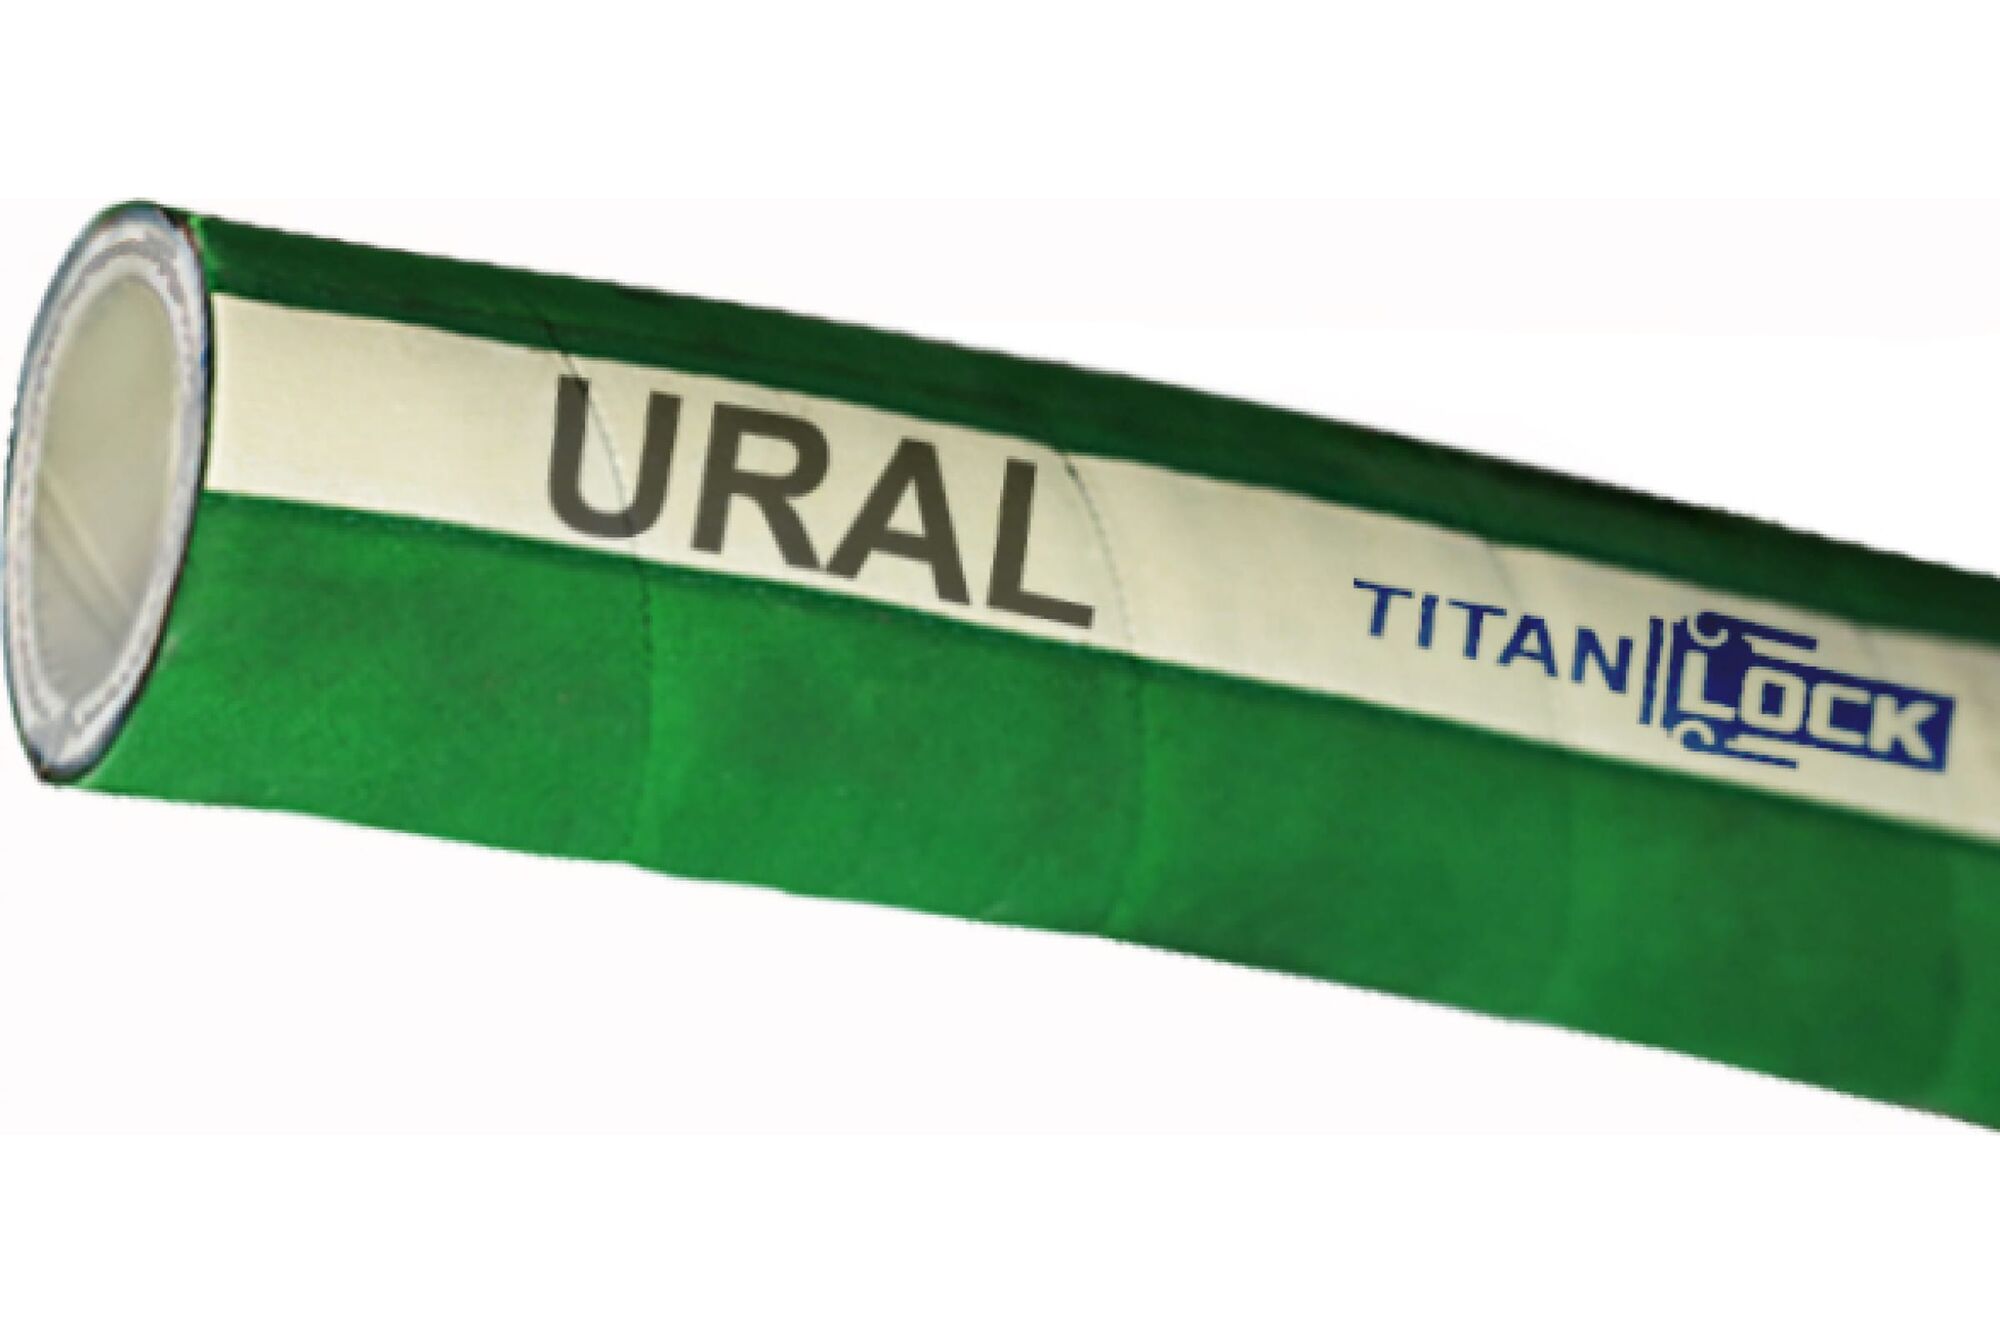 Химостойкий рукав «URAL», внутренний диаметр 51 мм, 16bar, 10 метров, UHMWPE, н/в TITAN LOCK TL050UR